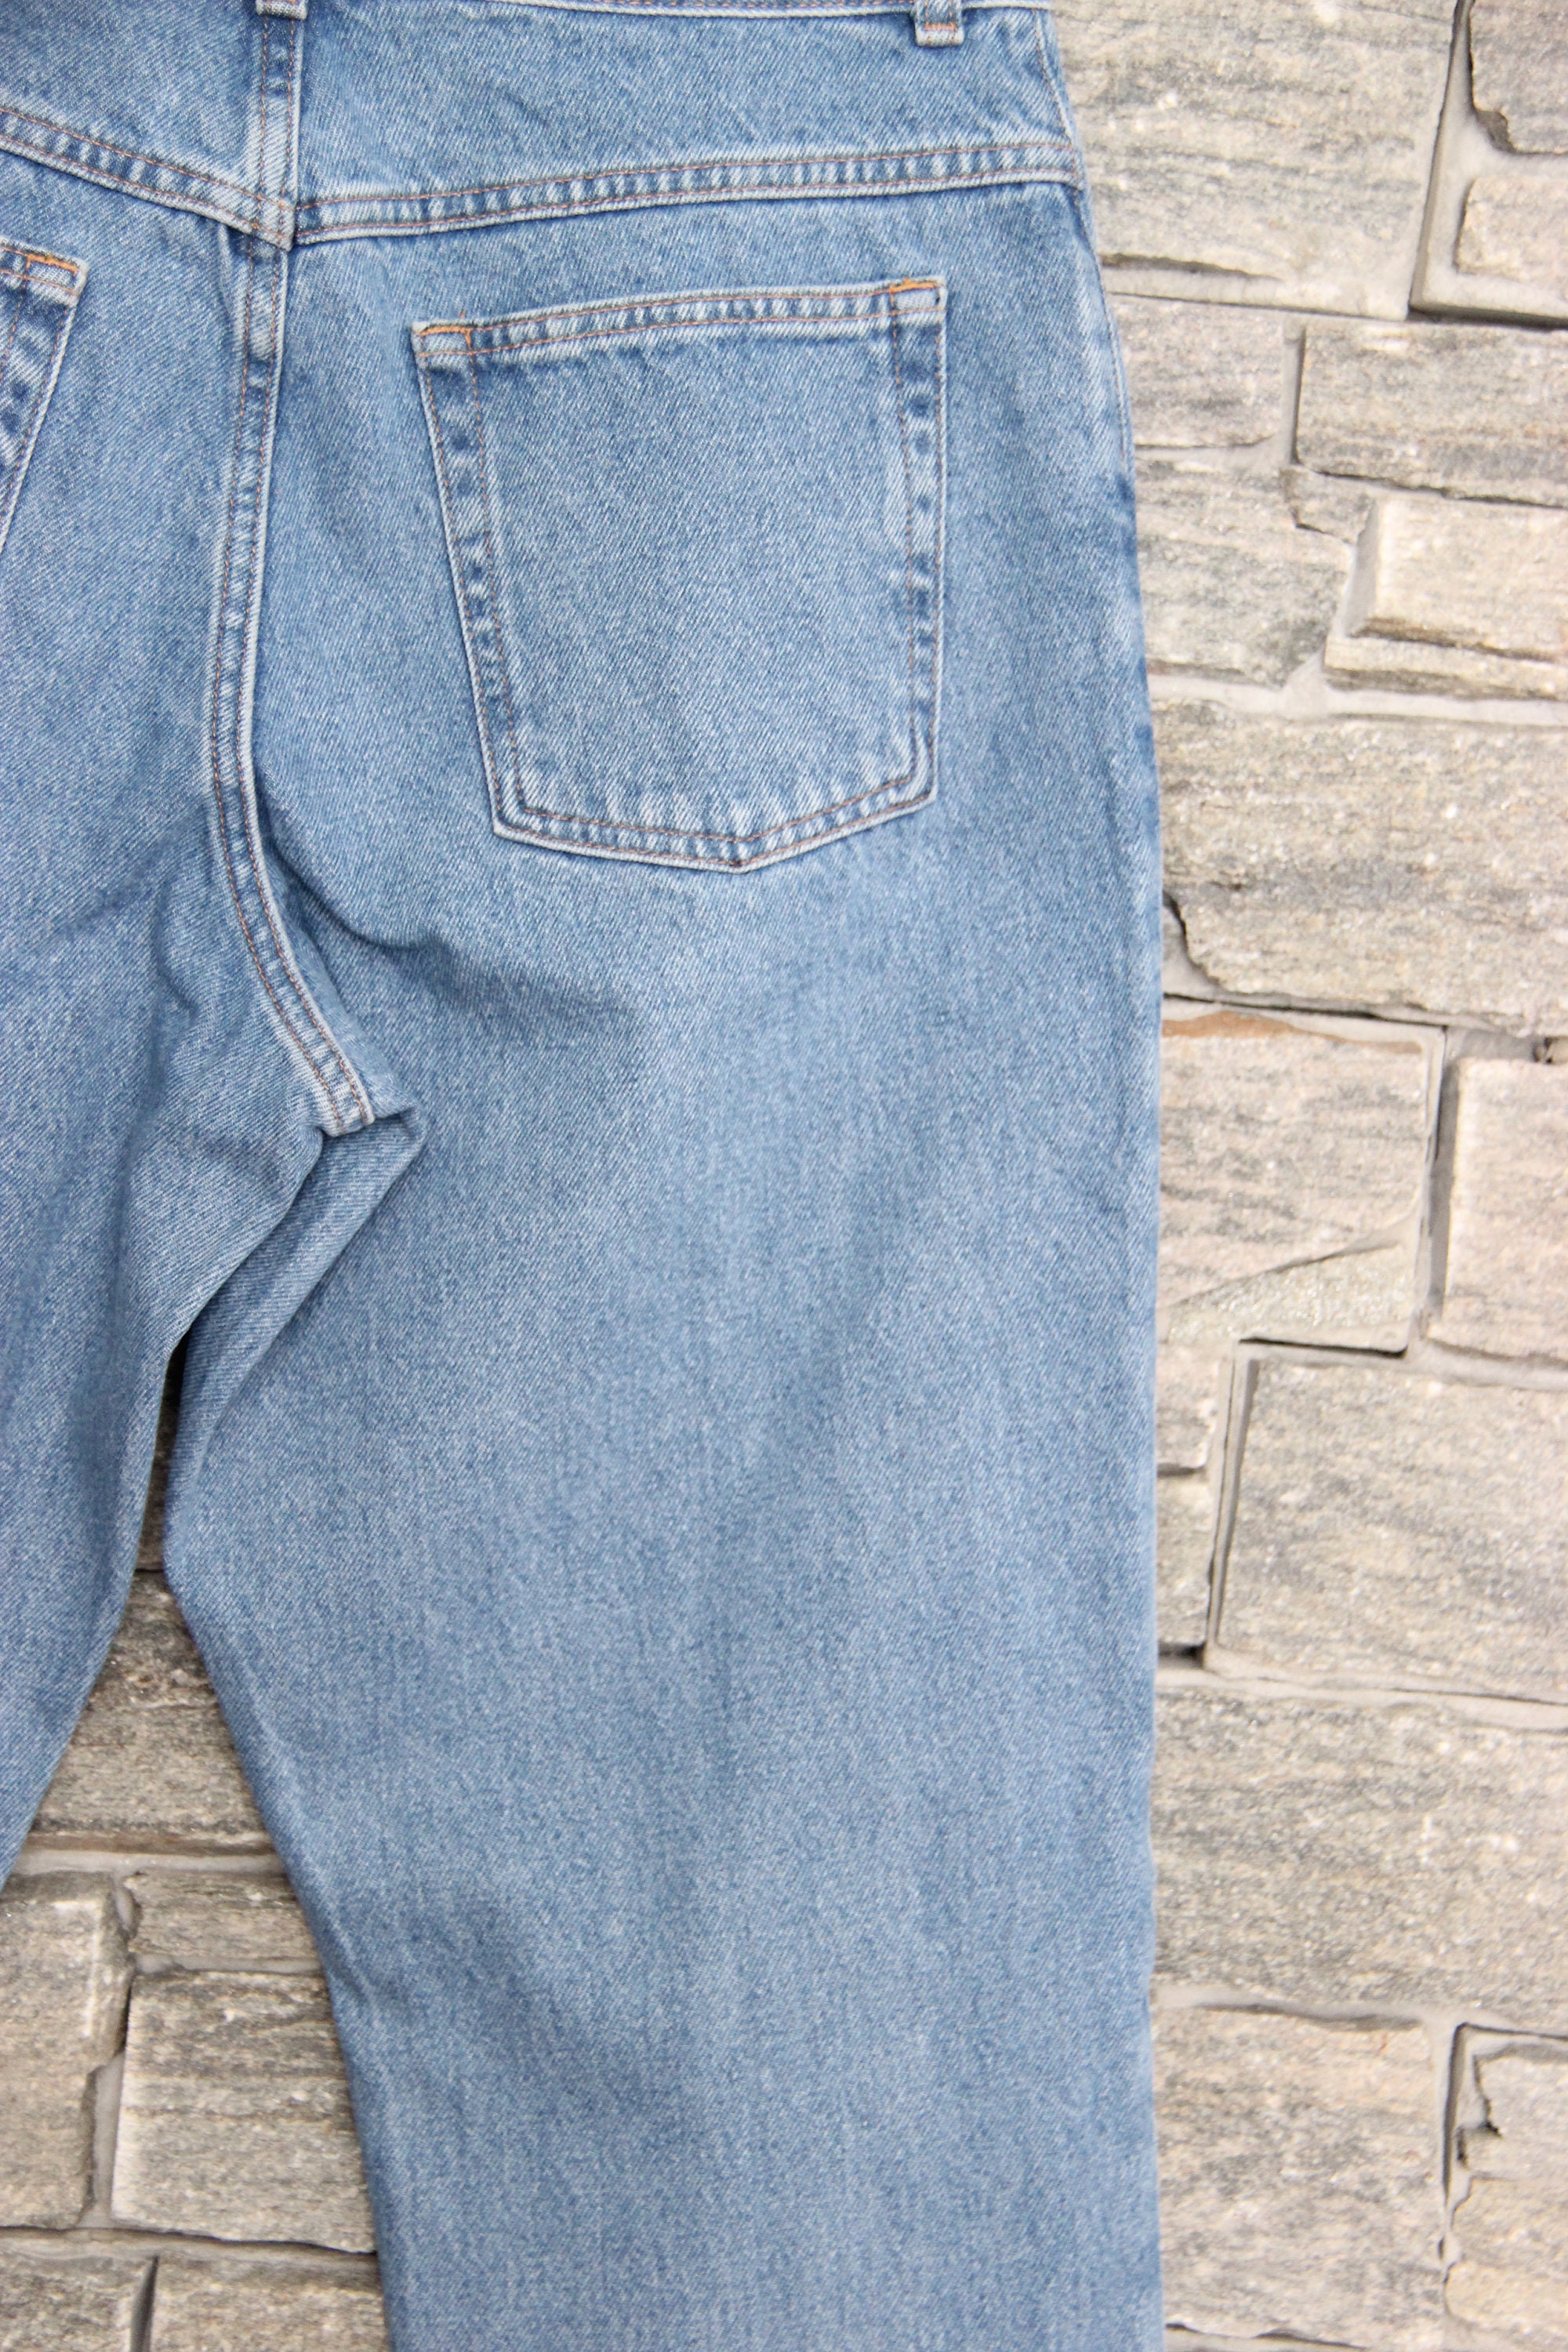 Vintage L.L. Bean Jeans 34 Waist Jeans Original Fit Jeans | Etsy